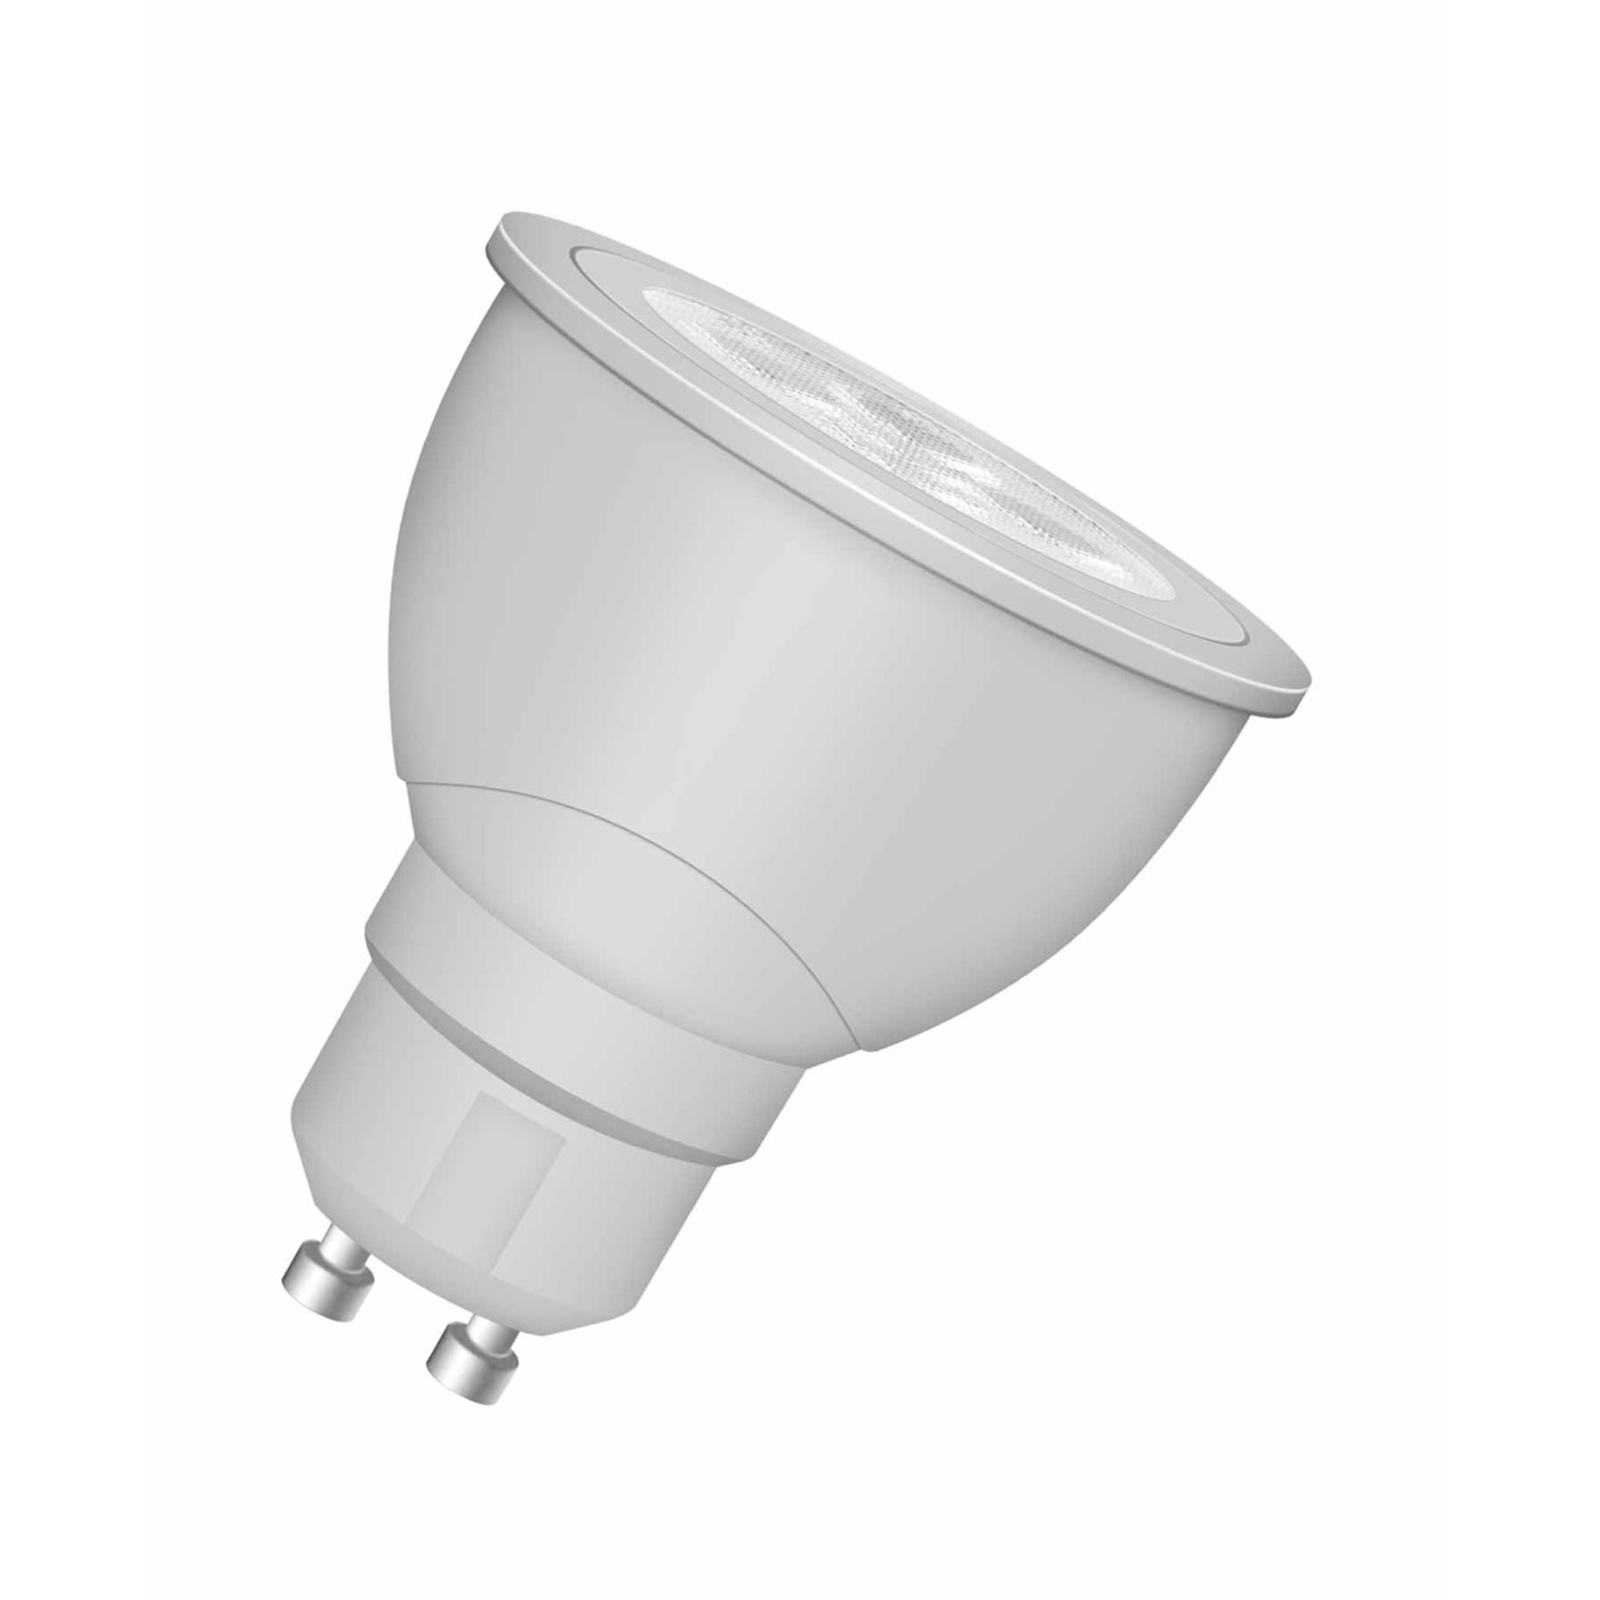 Osram 5.5W LED Dimmable Warm White GU10 Globe